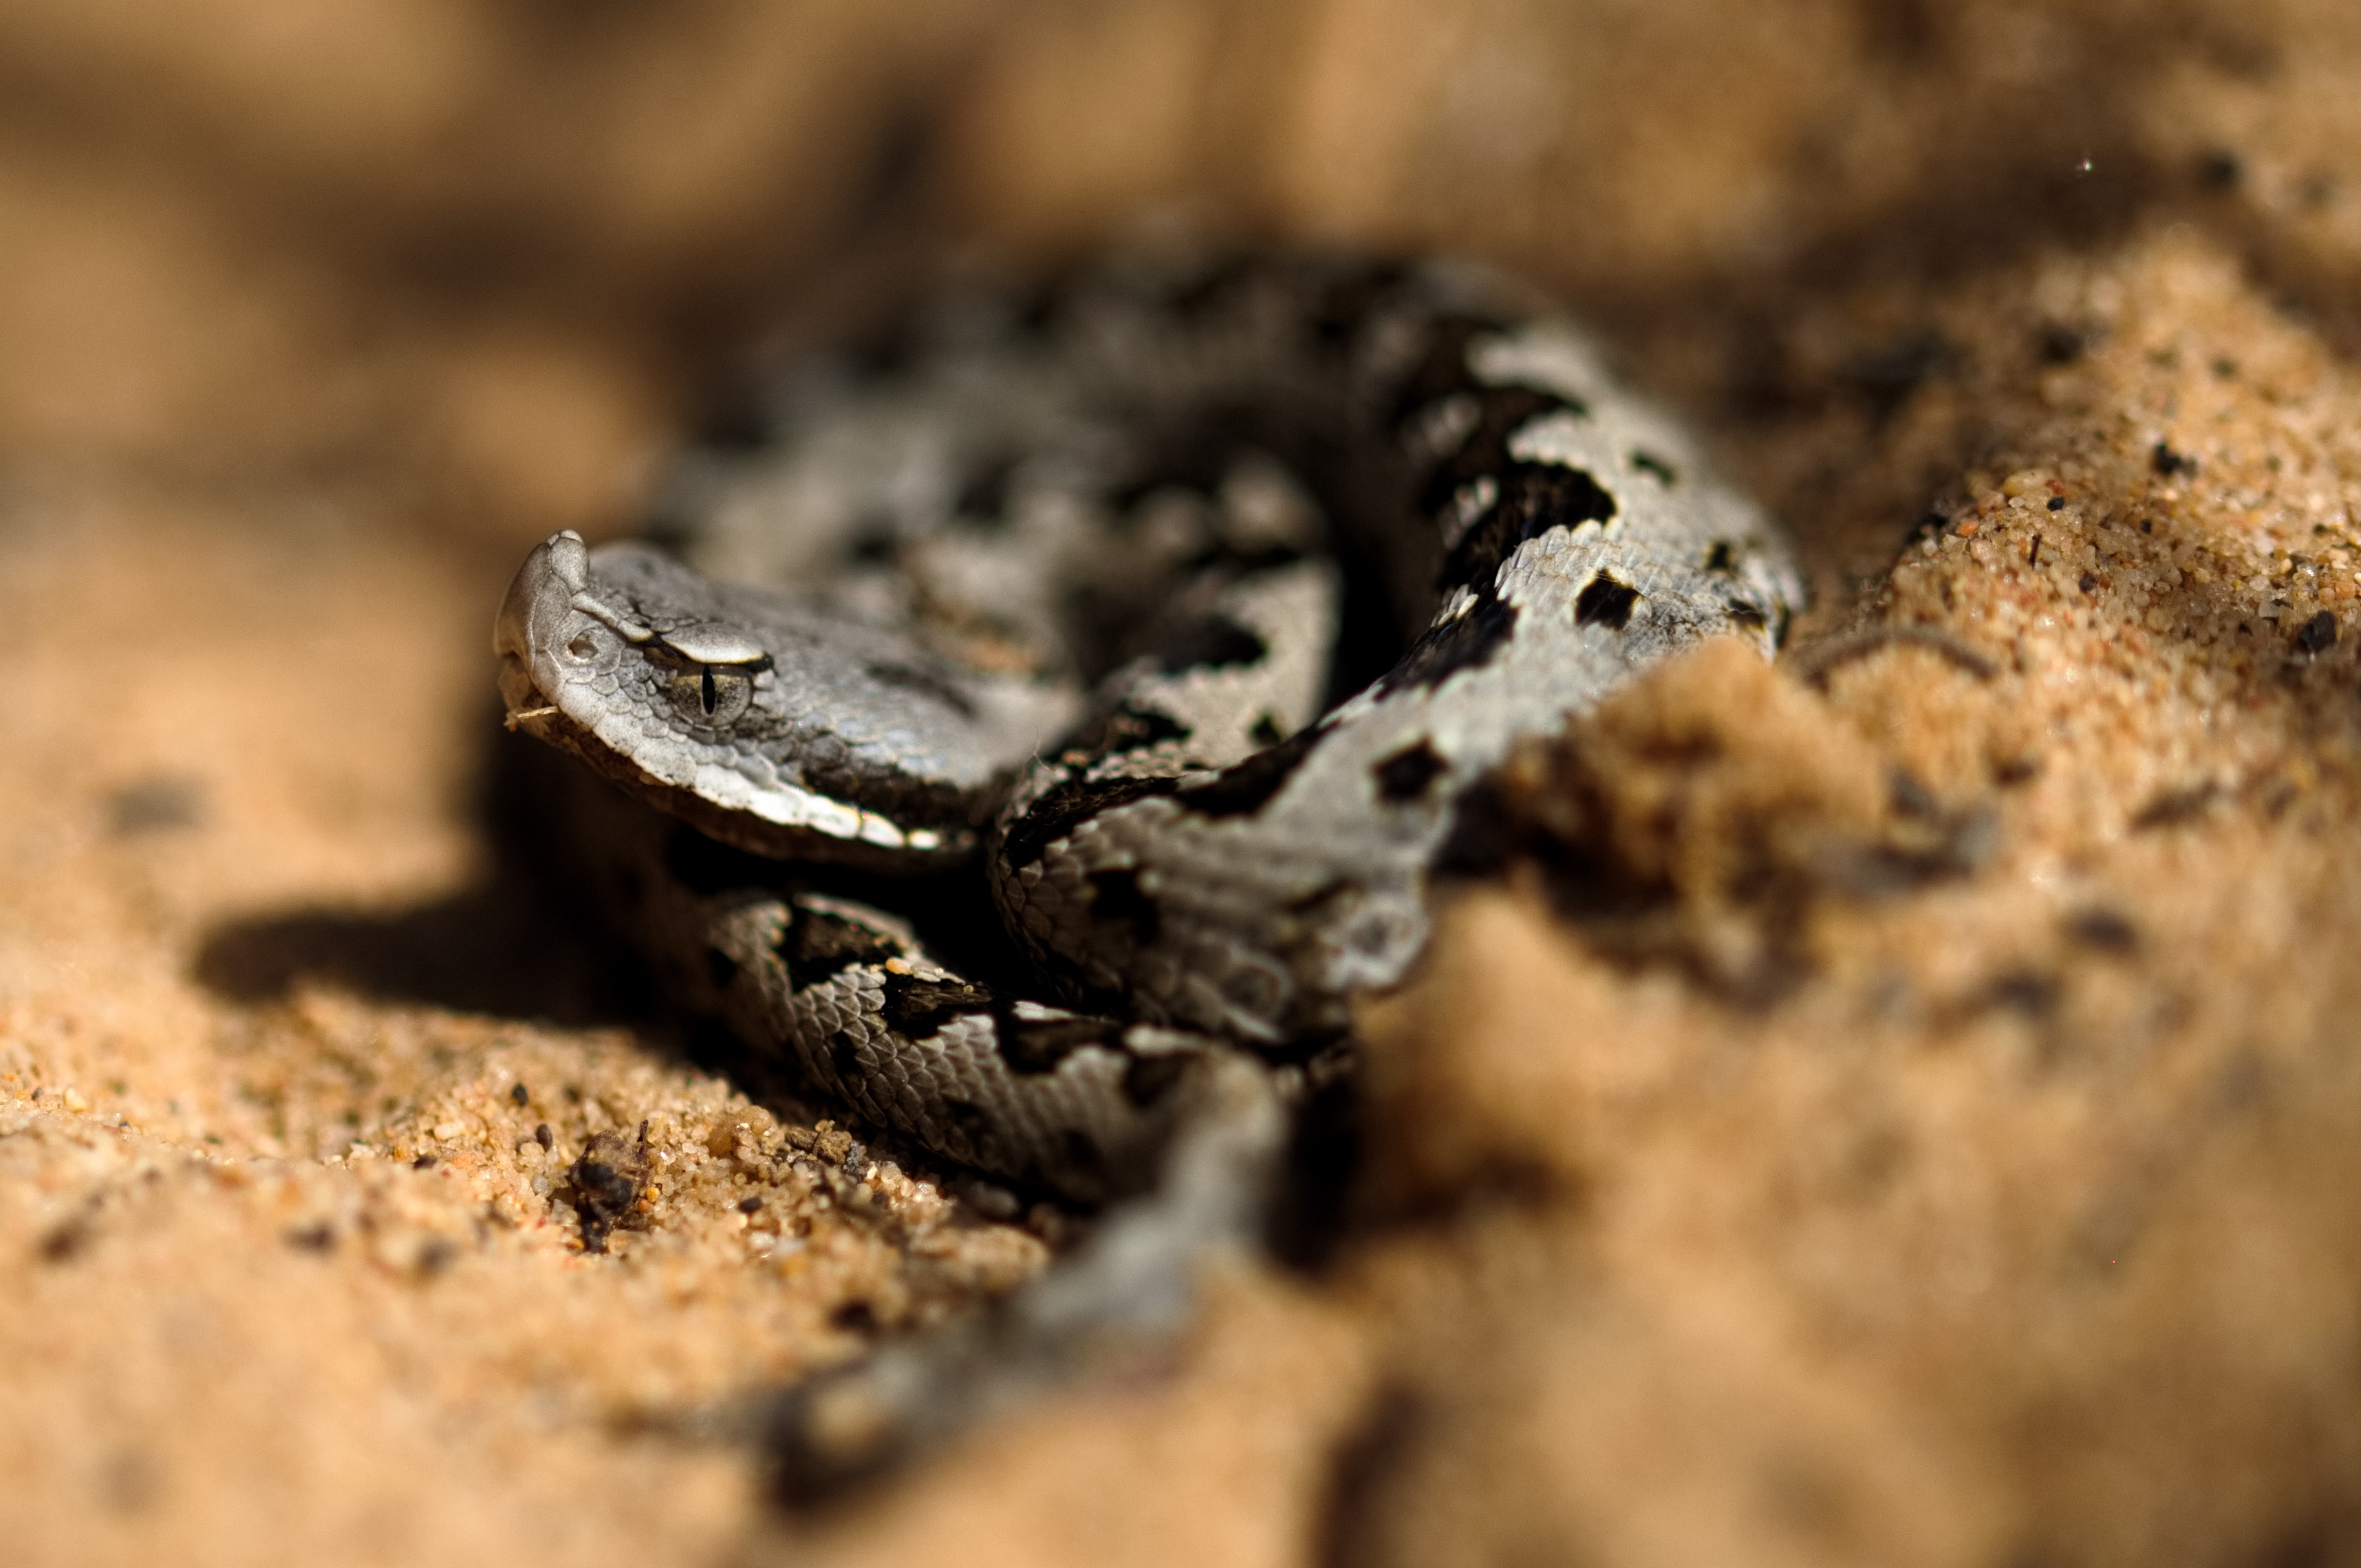 Individuo joven de V. latastei observada en la Reserva Biológica de Doñana. Autor: Mizar Torrijo-Salesa